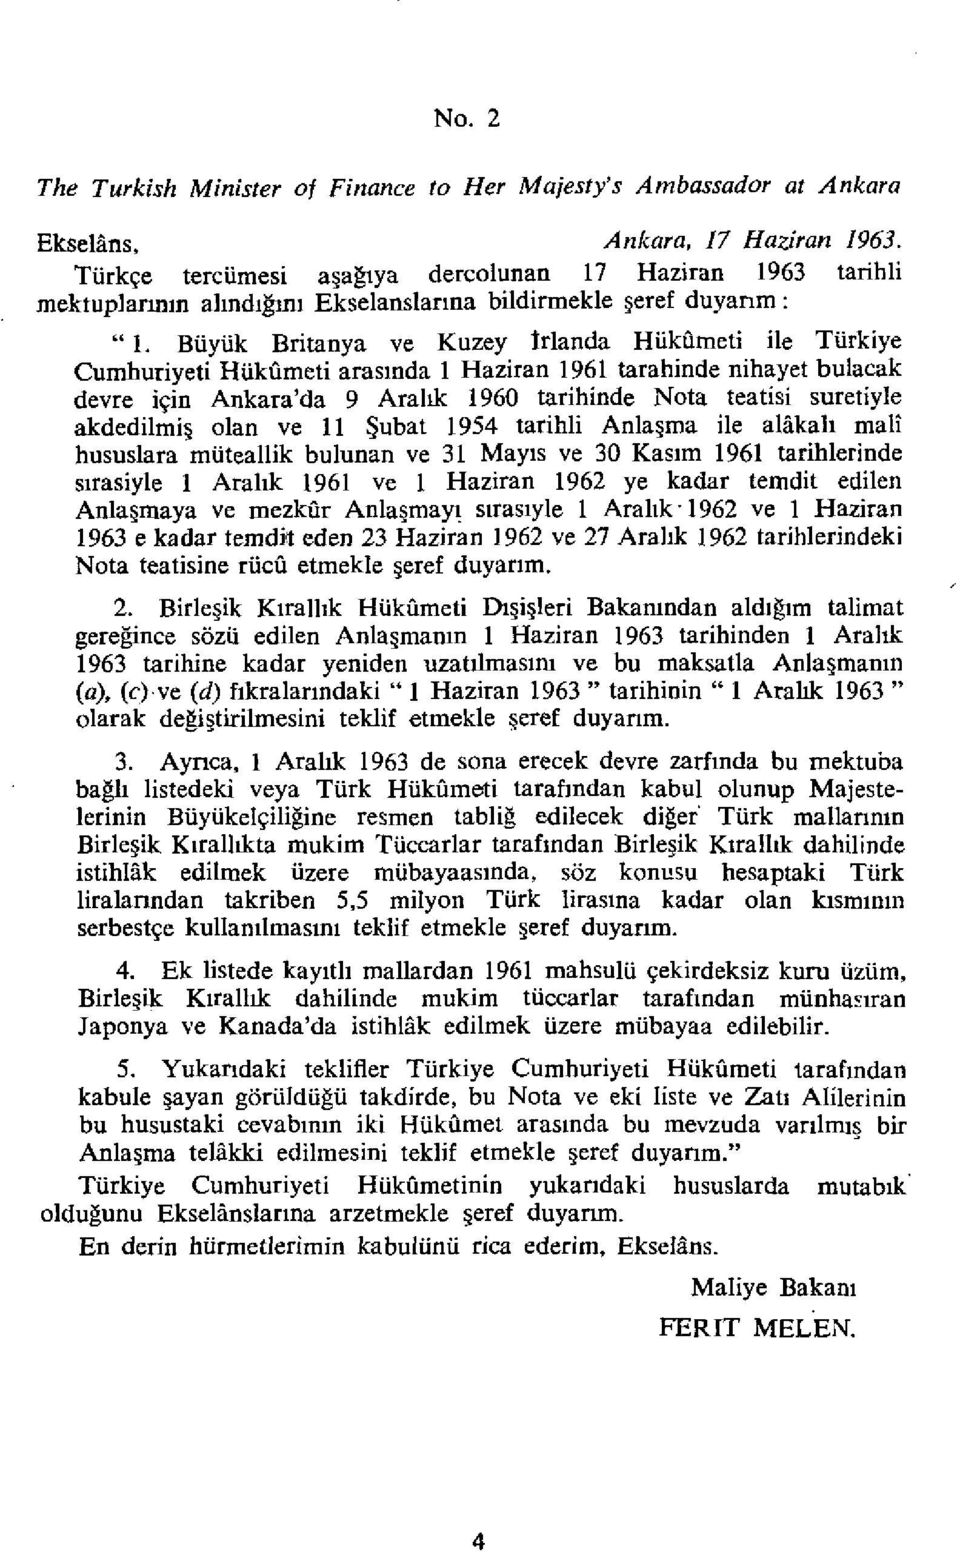 Biiyiik Britanya ve Kuzey Wanda Hiikiimeti ile Tiirkiye Cumhuriyeti Hiikiimeti arasinda 1 Haziran 1961 tarahinde nihayet bulacak devre igin Ankara da 9 Arallk 1960 tarihinde Nota teatisi suretiyle